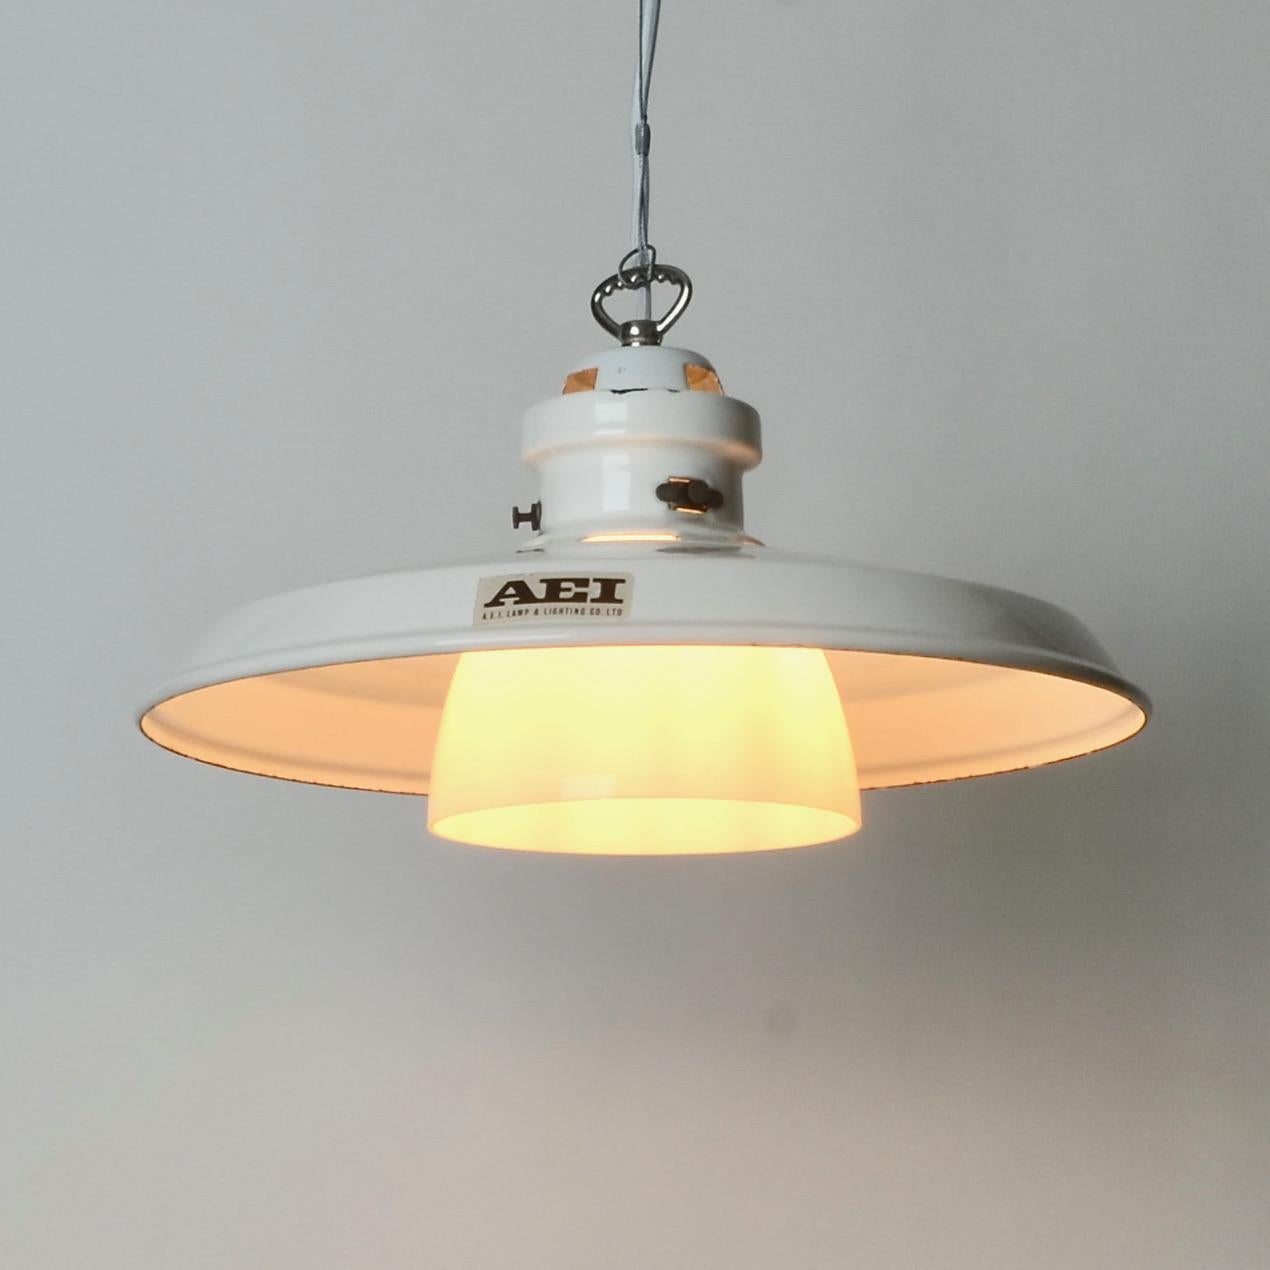 Mid-20th Century Vintage AEI Pendant Light For Sale